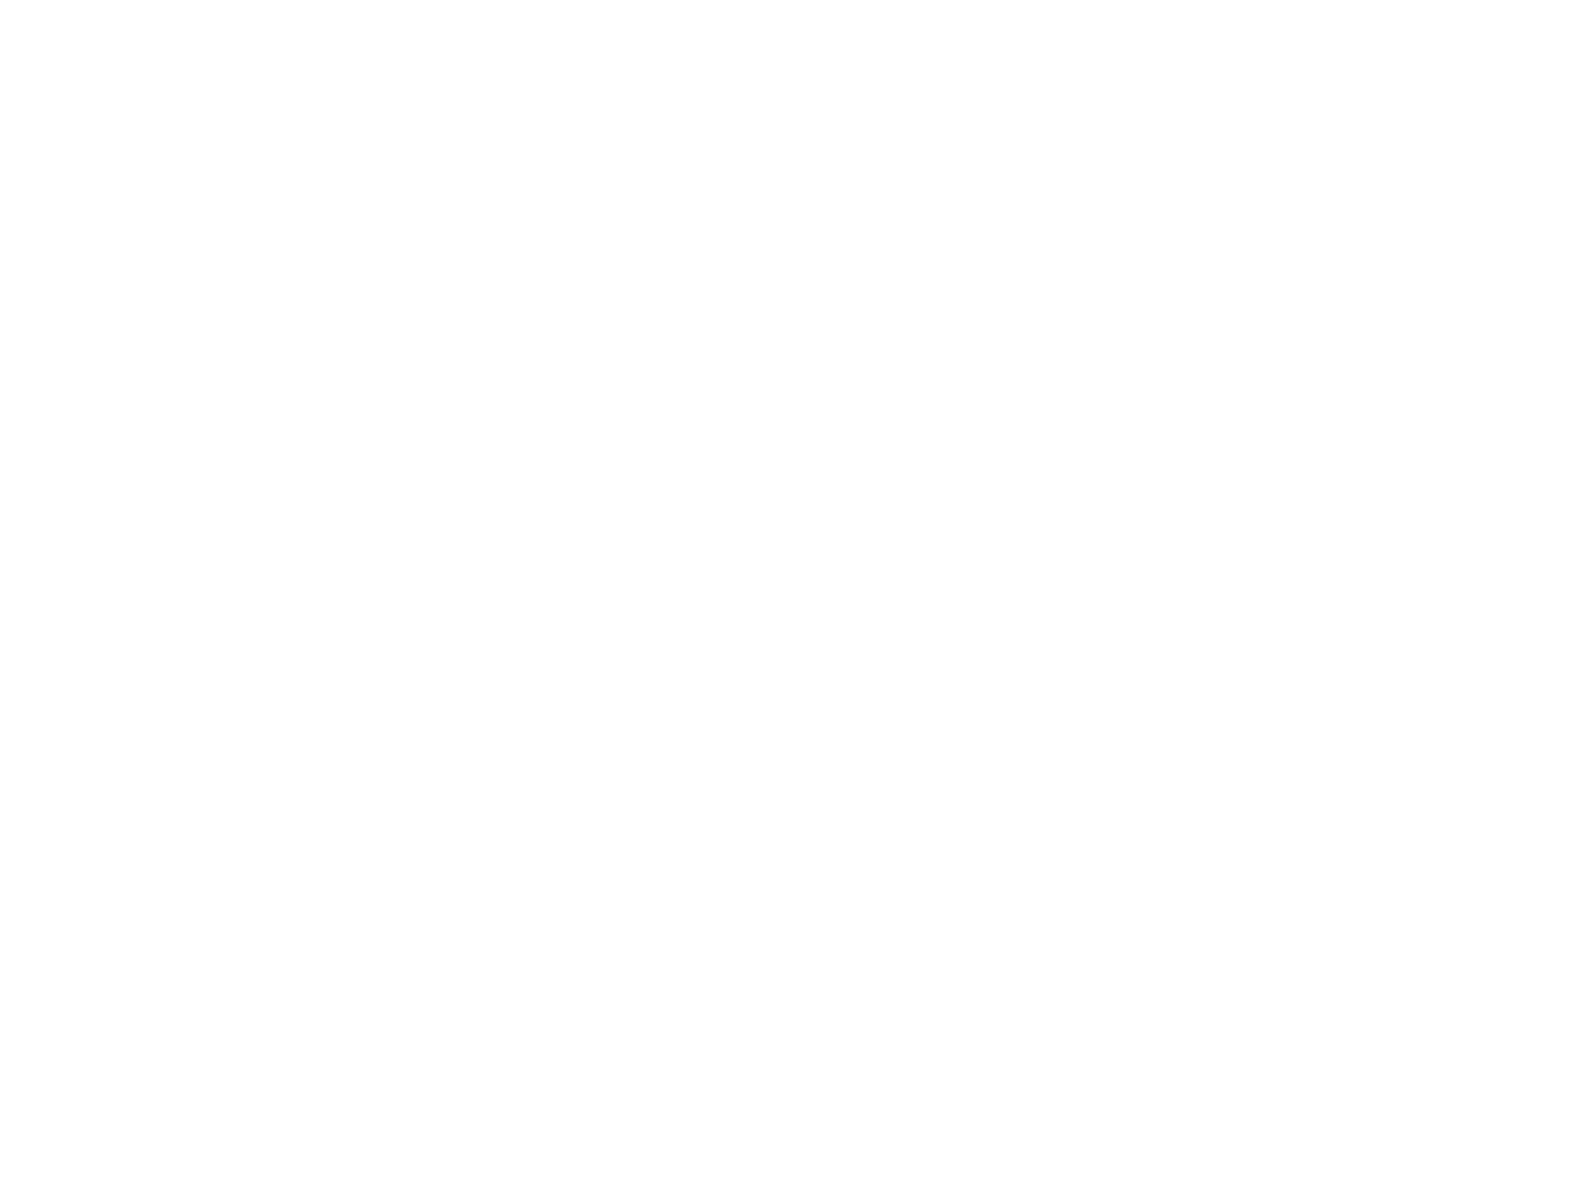 Bitdeer Technologies Group logo for dark backgrounds (transparent PNG)